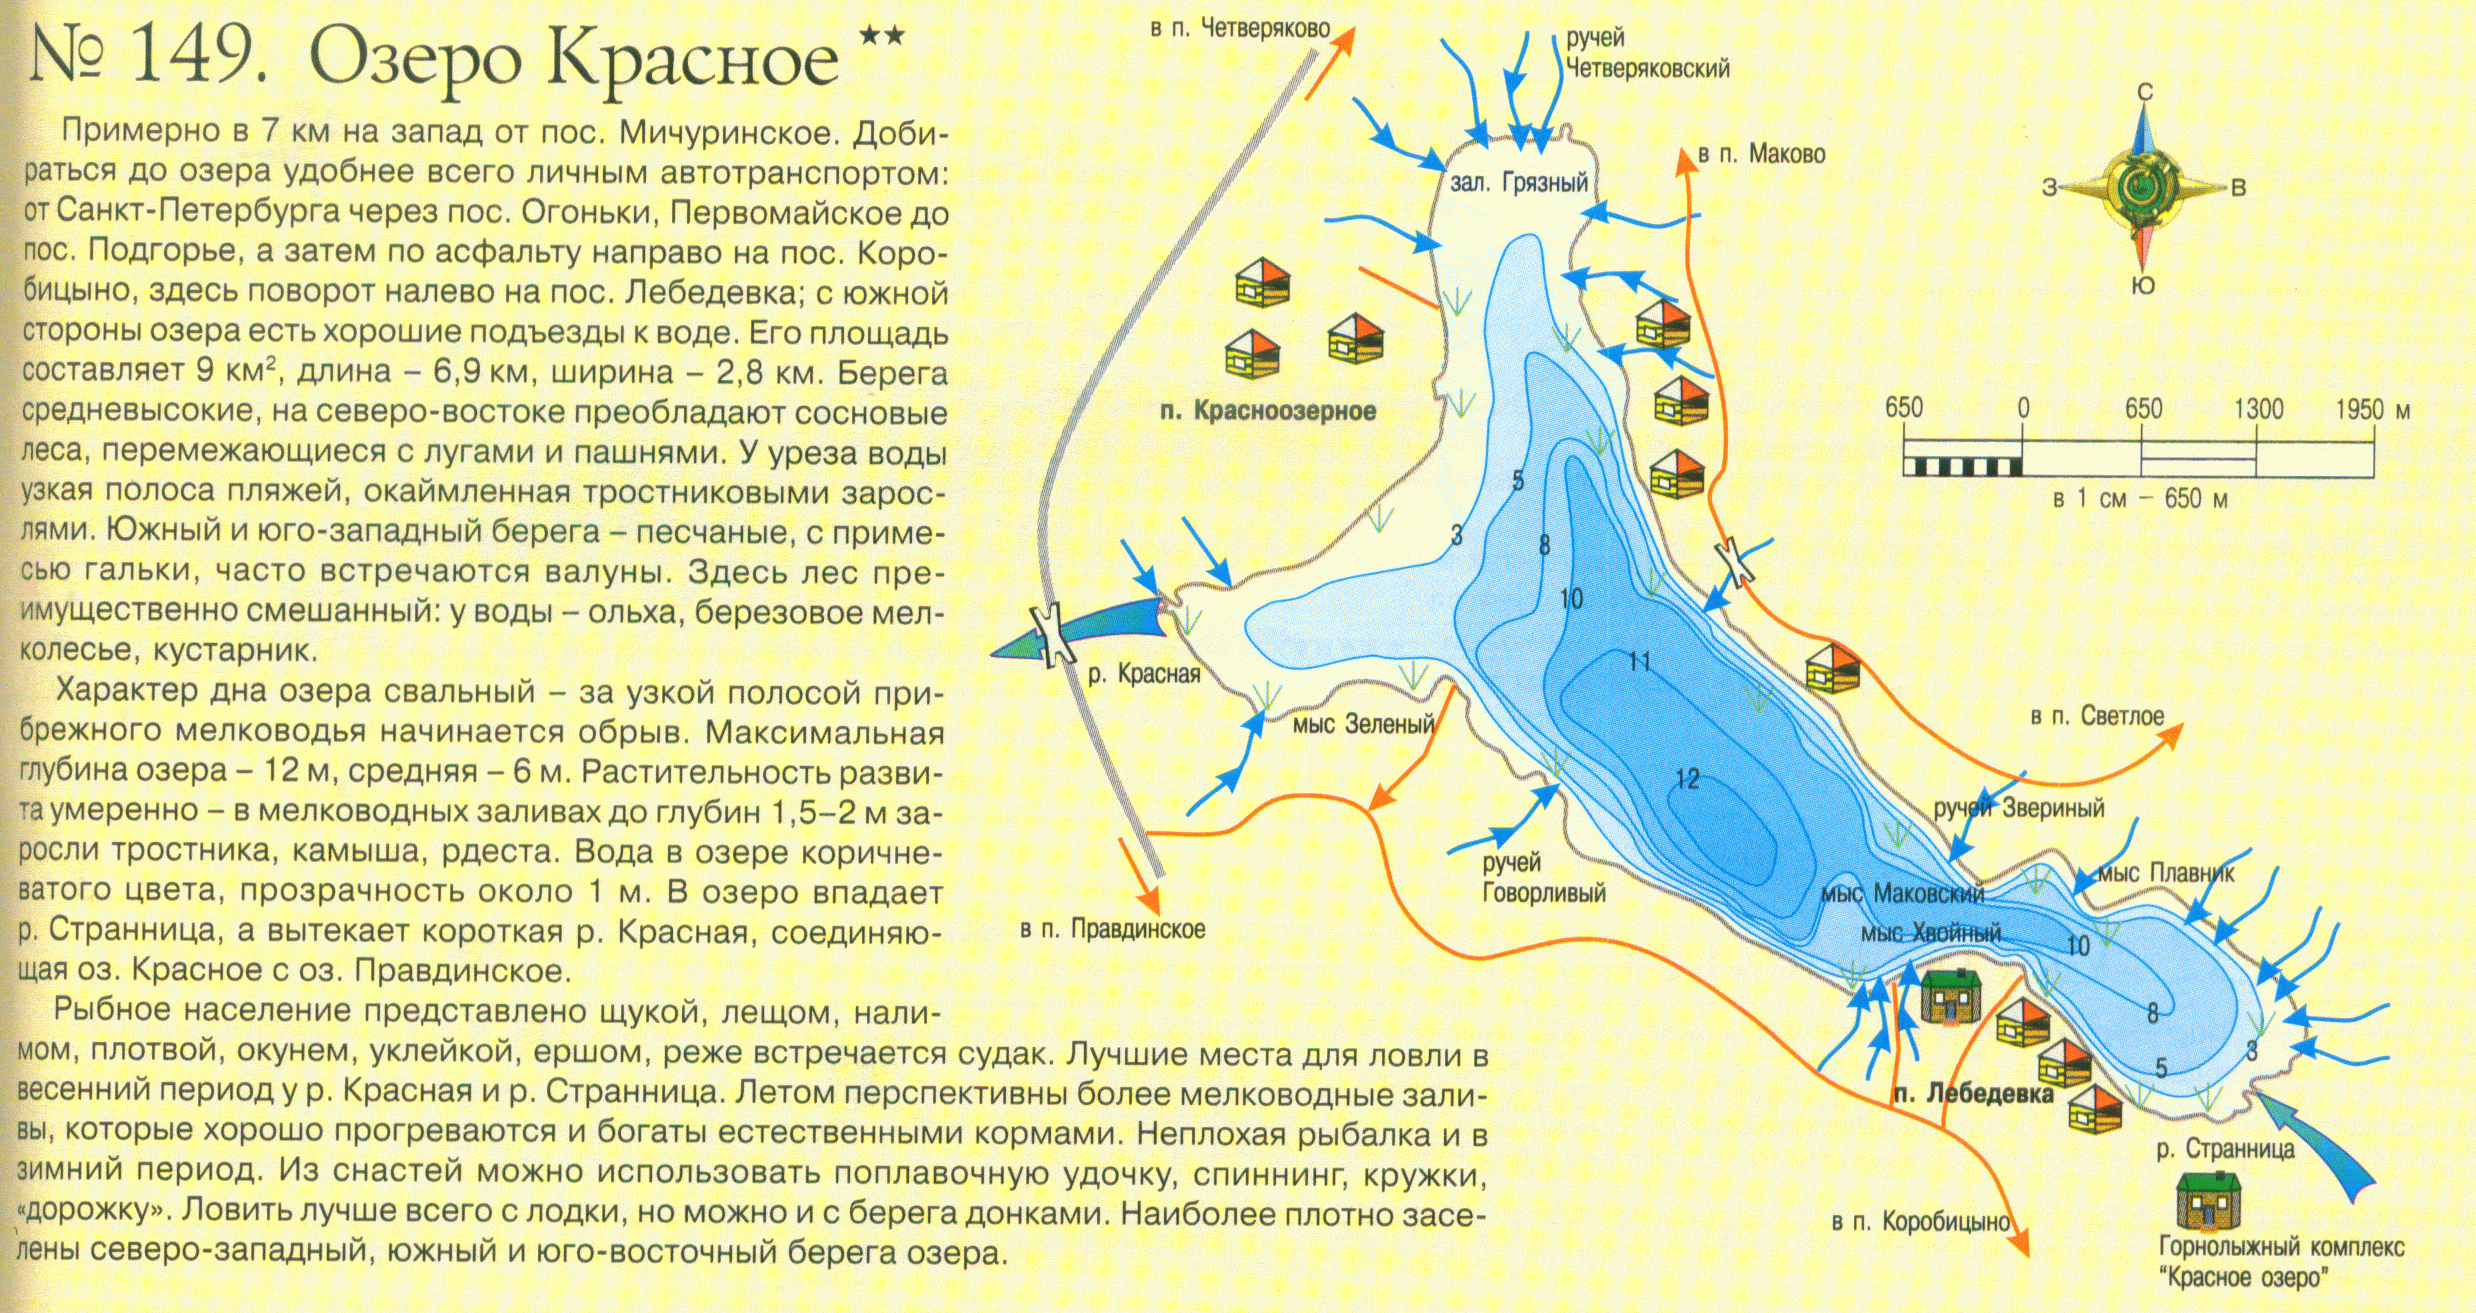 Шушпанское водохранилище тамбовской области отчеты о рыбалке